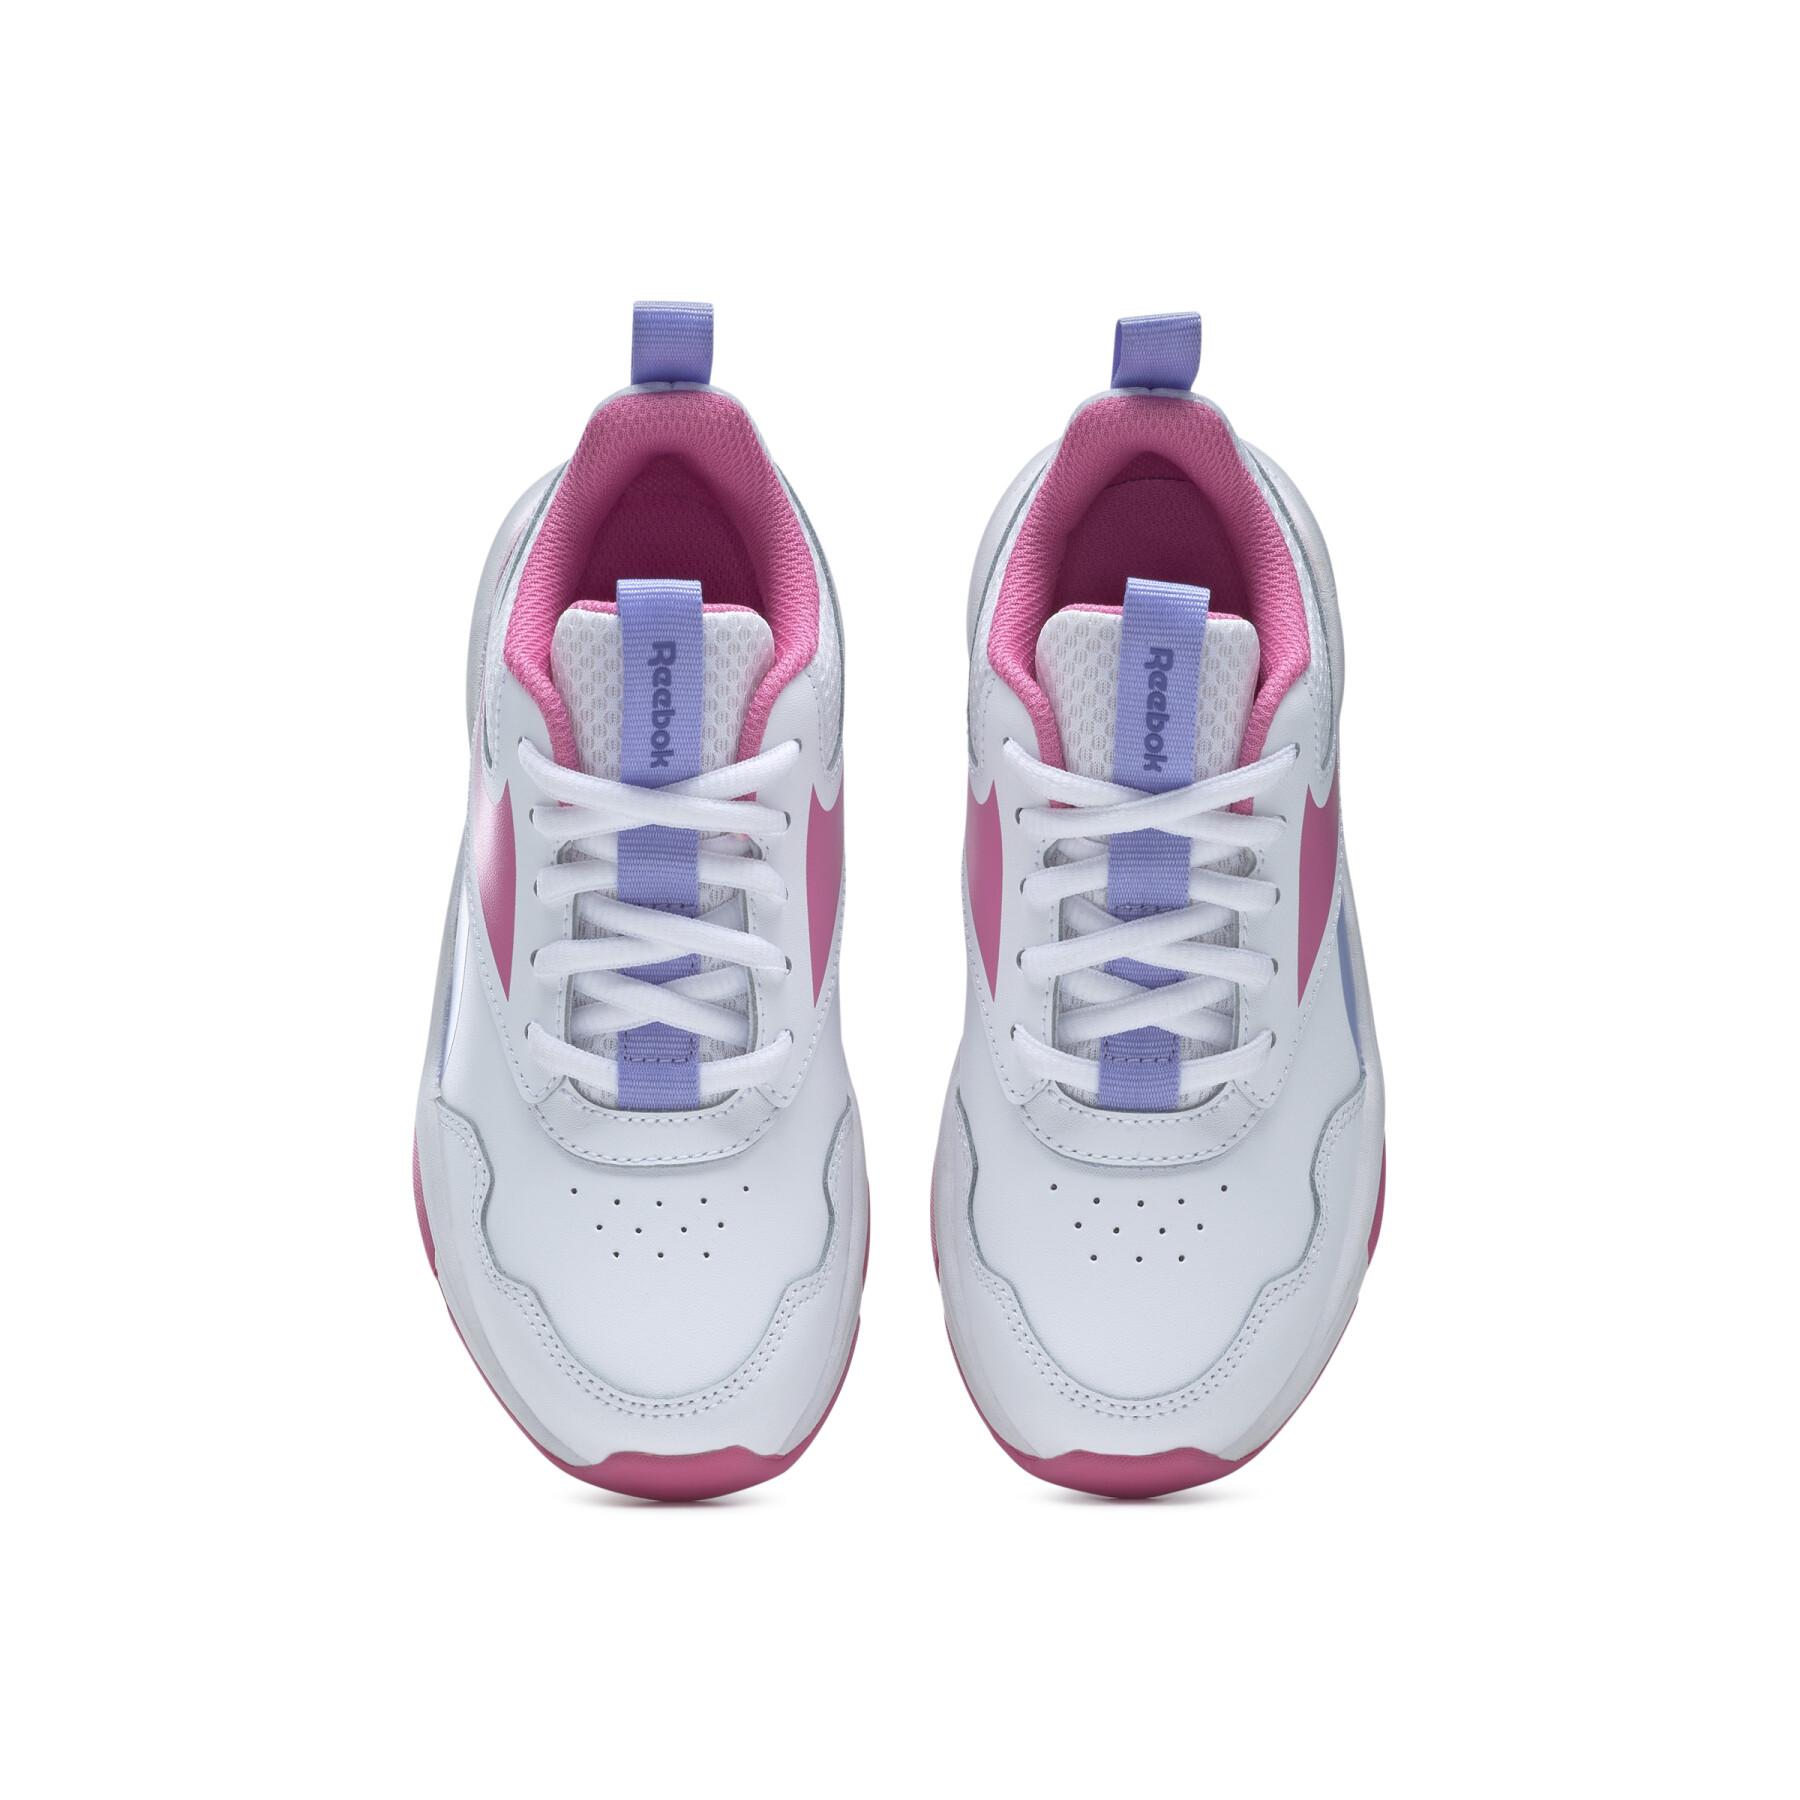 Chaussures de running fille Reebok Xt Sprinter 2